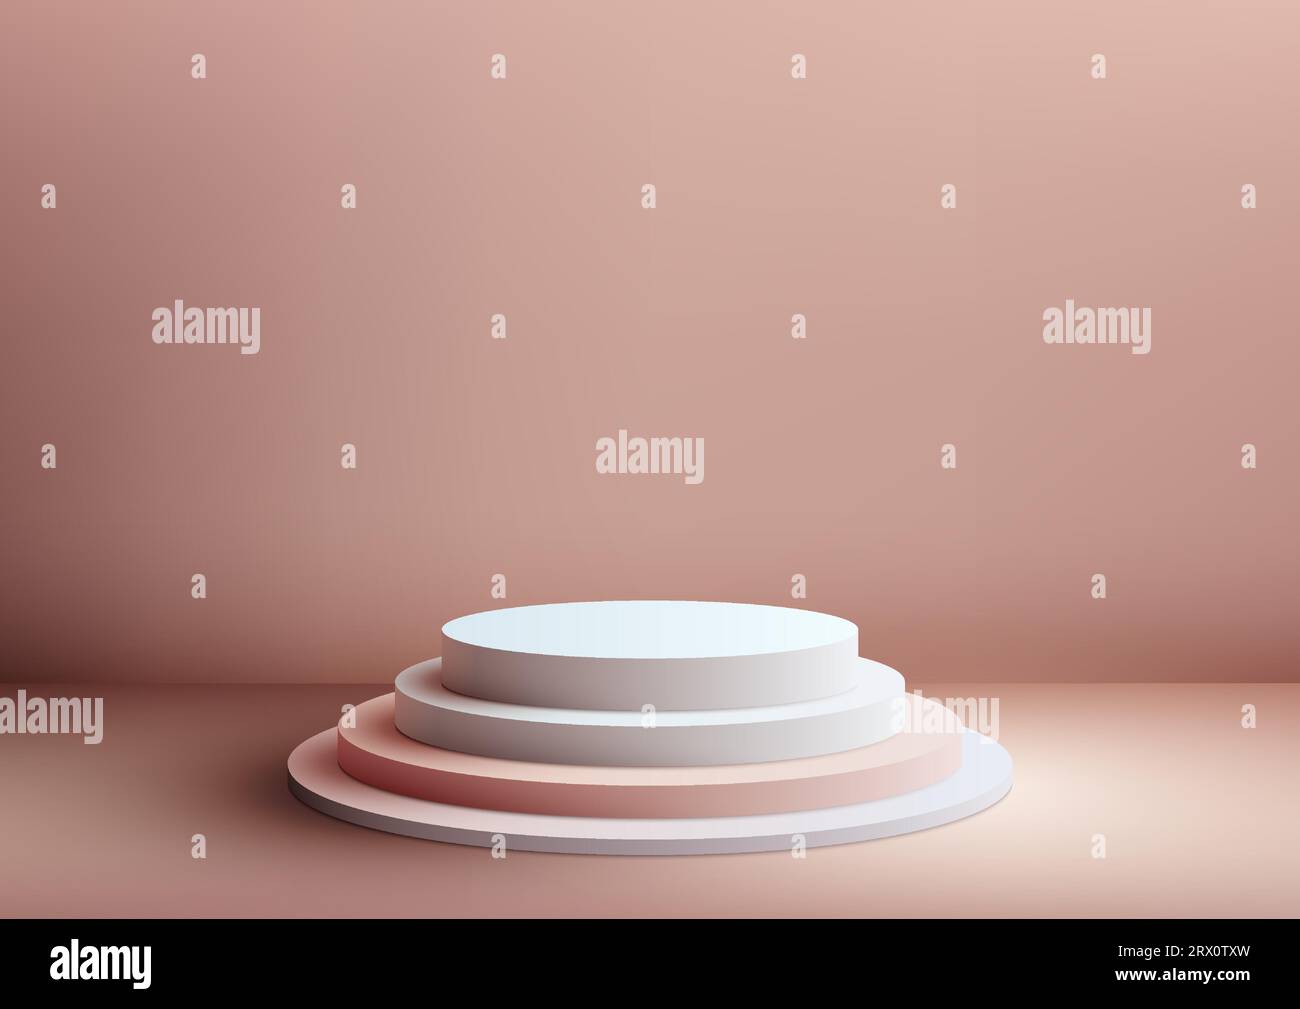 Der realistische, weiße und pinkfarbene 3D-Trittstufen-Ständer ist eine vielseitige Requisite, die für eine Vielzahl von Zwecken verwendet werden kann. Es ist perfekt für Produktpräsentationen, Vordrucke Stock Vektor